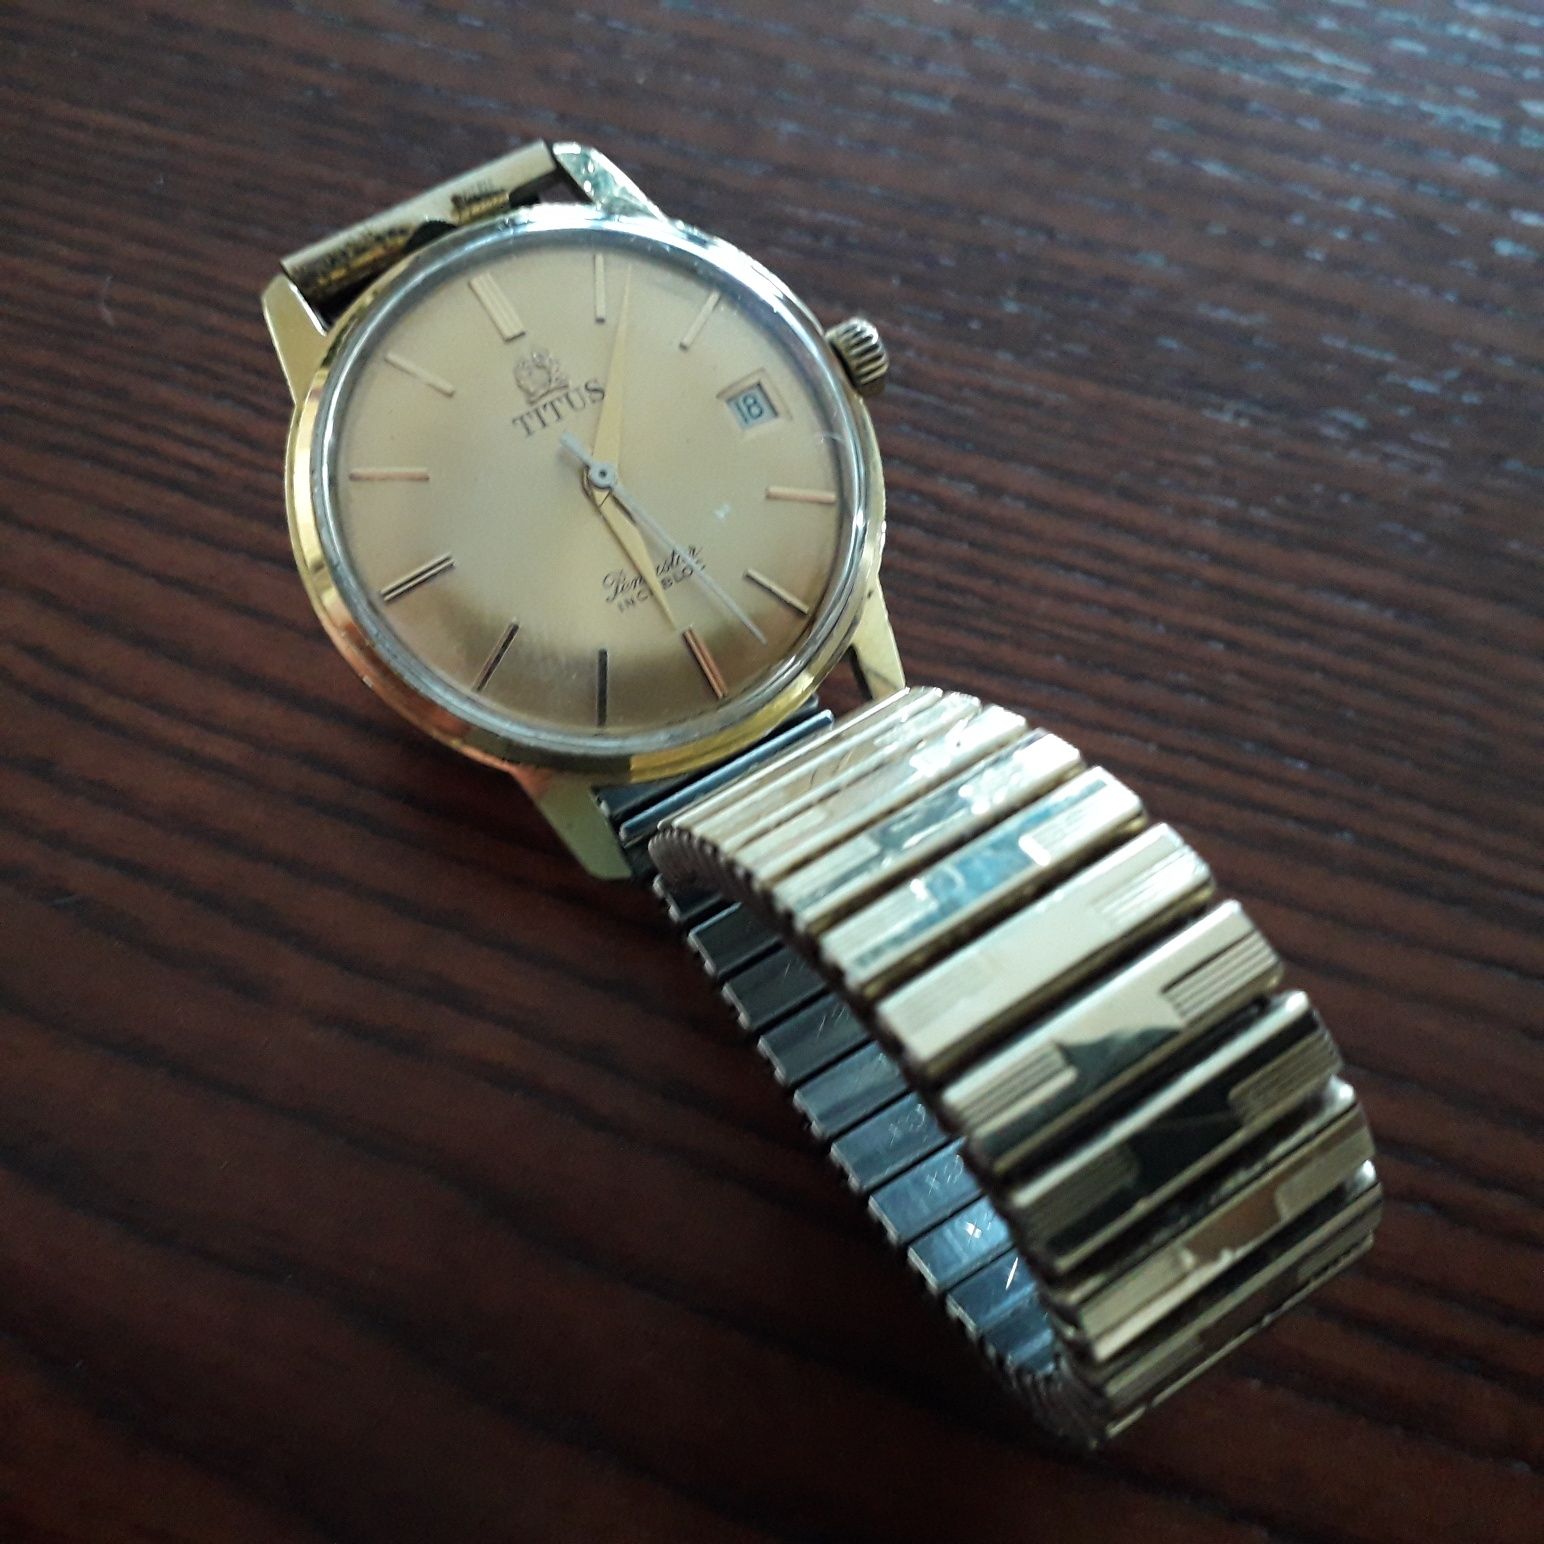 Zegarek SOLVIL & TITUS 17 JEWELS nakręcony zegarek męski z datownikiem